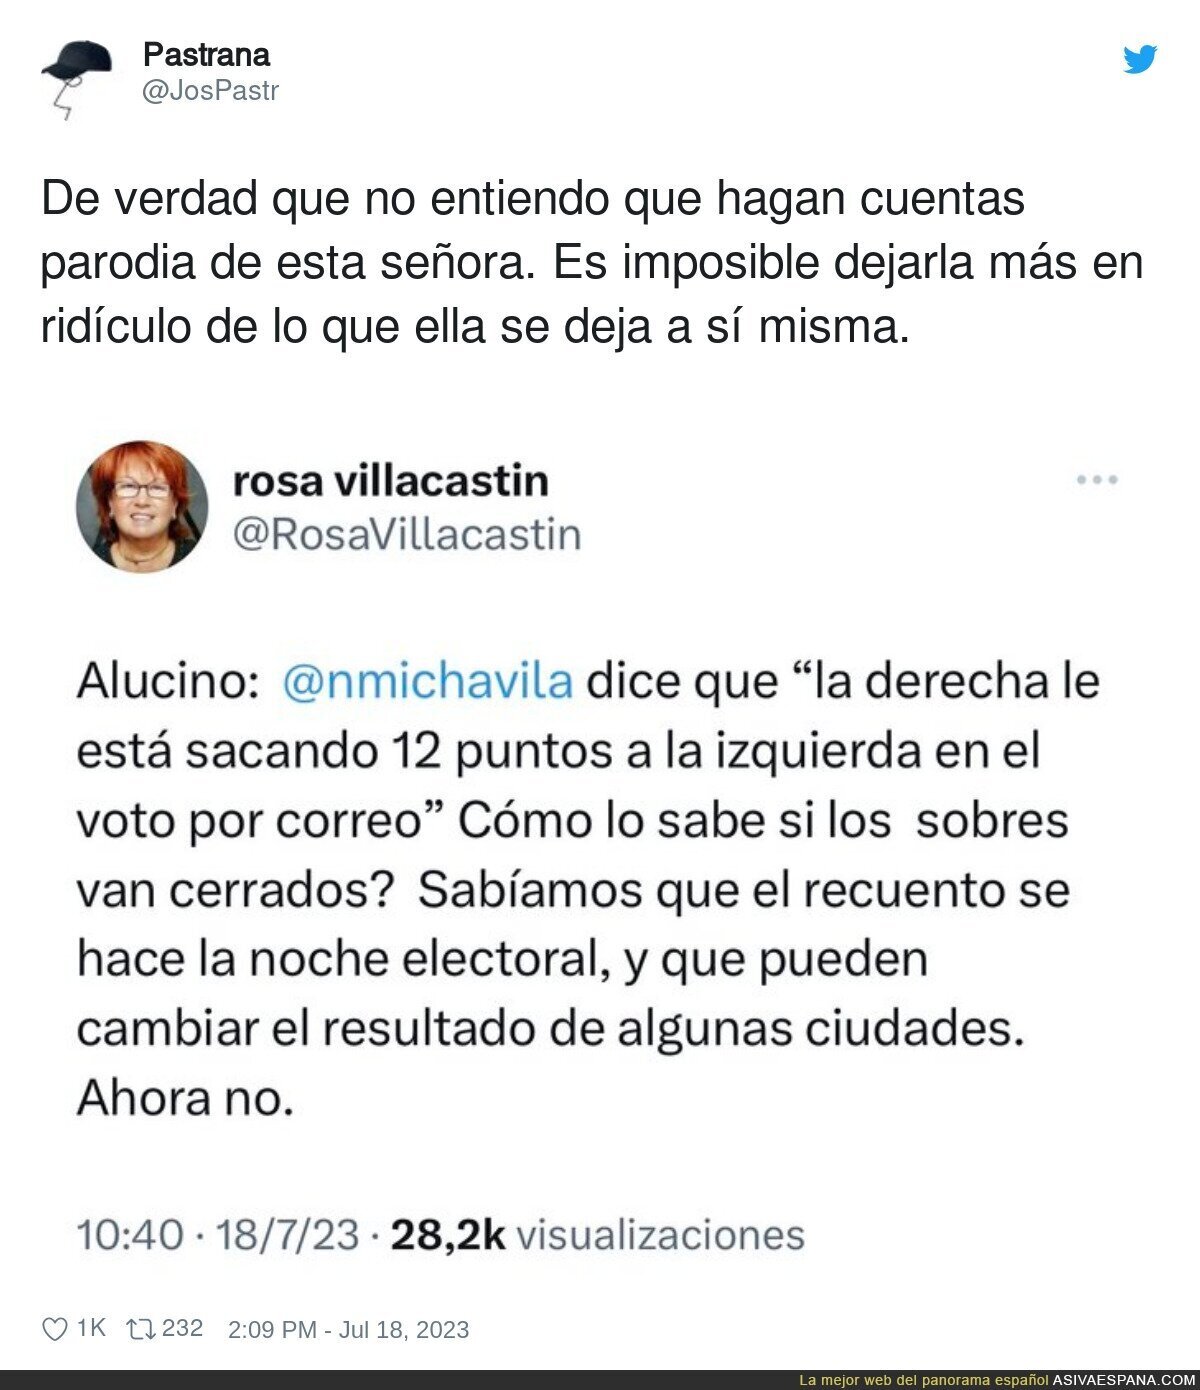 Tremendo lo de Rosa Villacastín